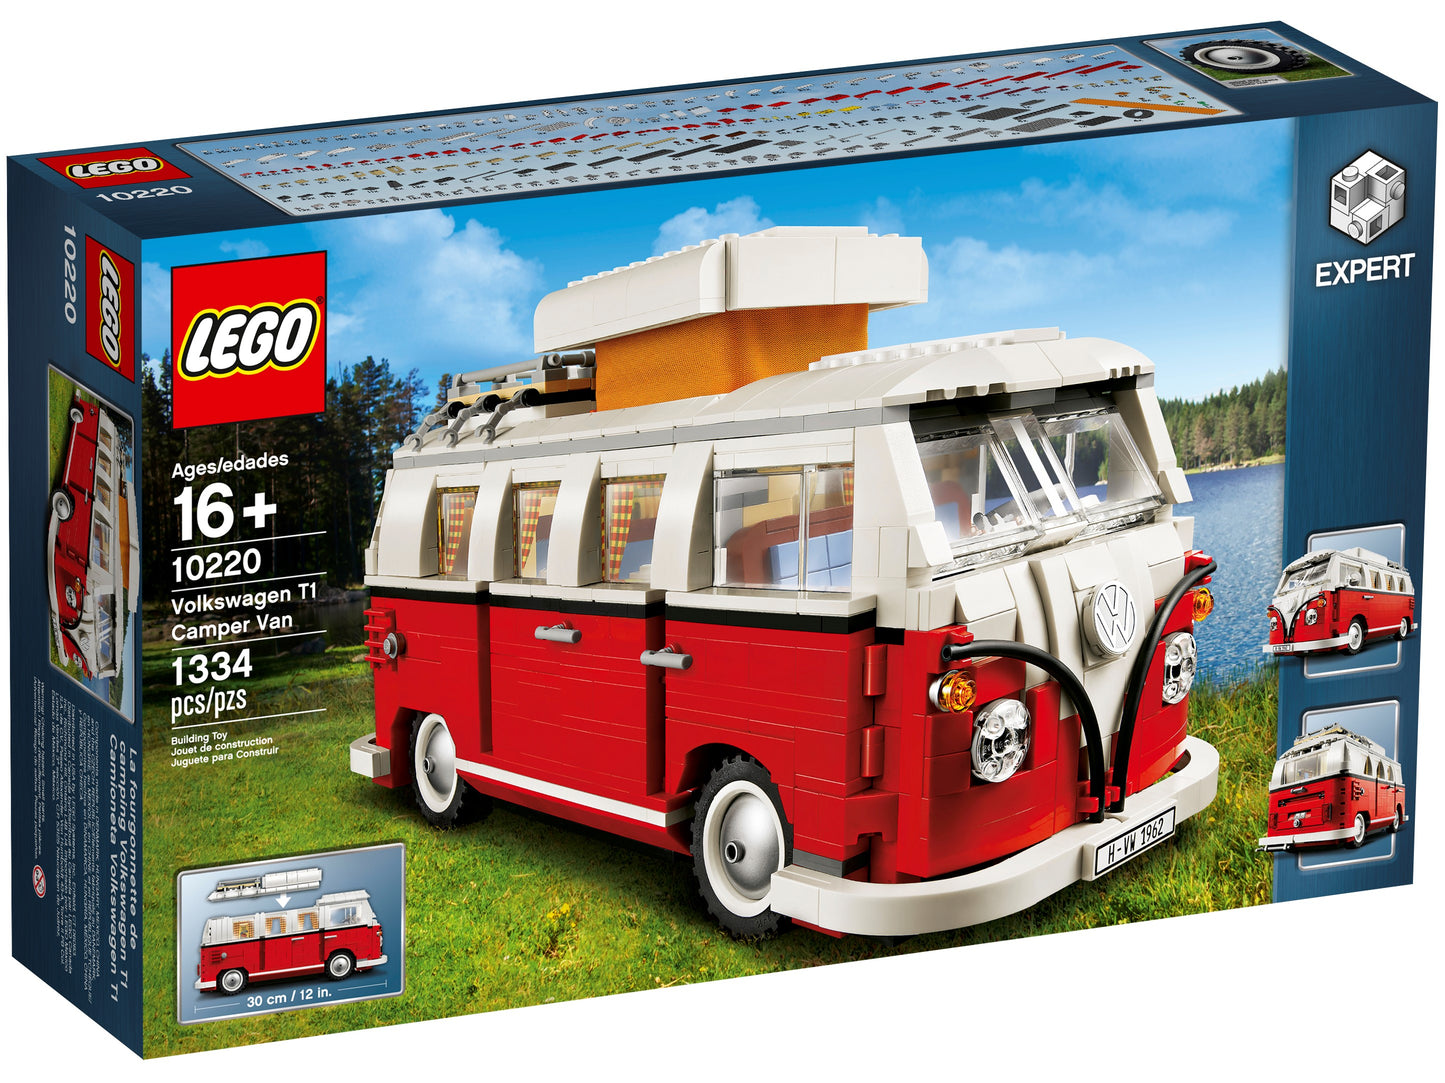 10220 LEGO Creator - Volkswagen T1 Camper Van